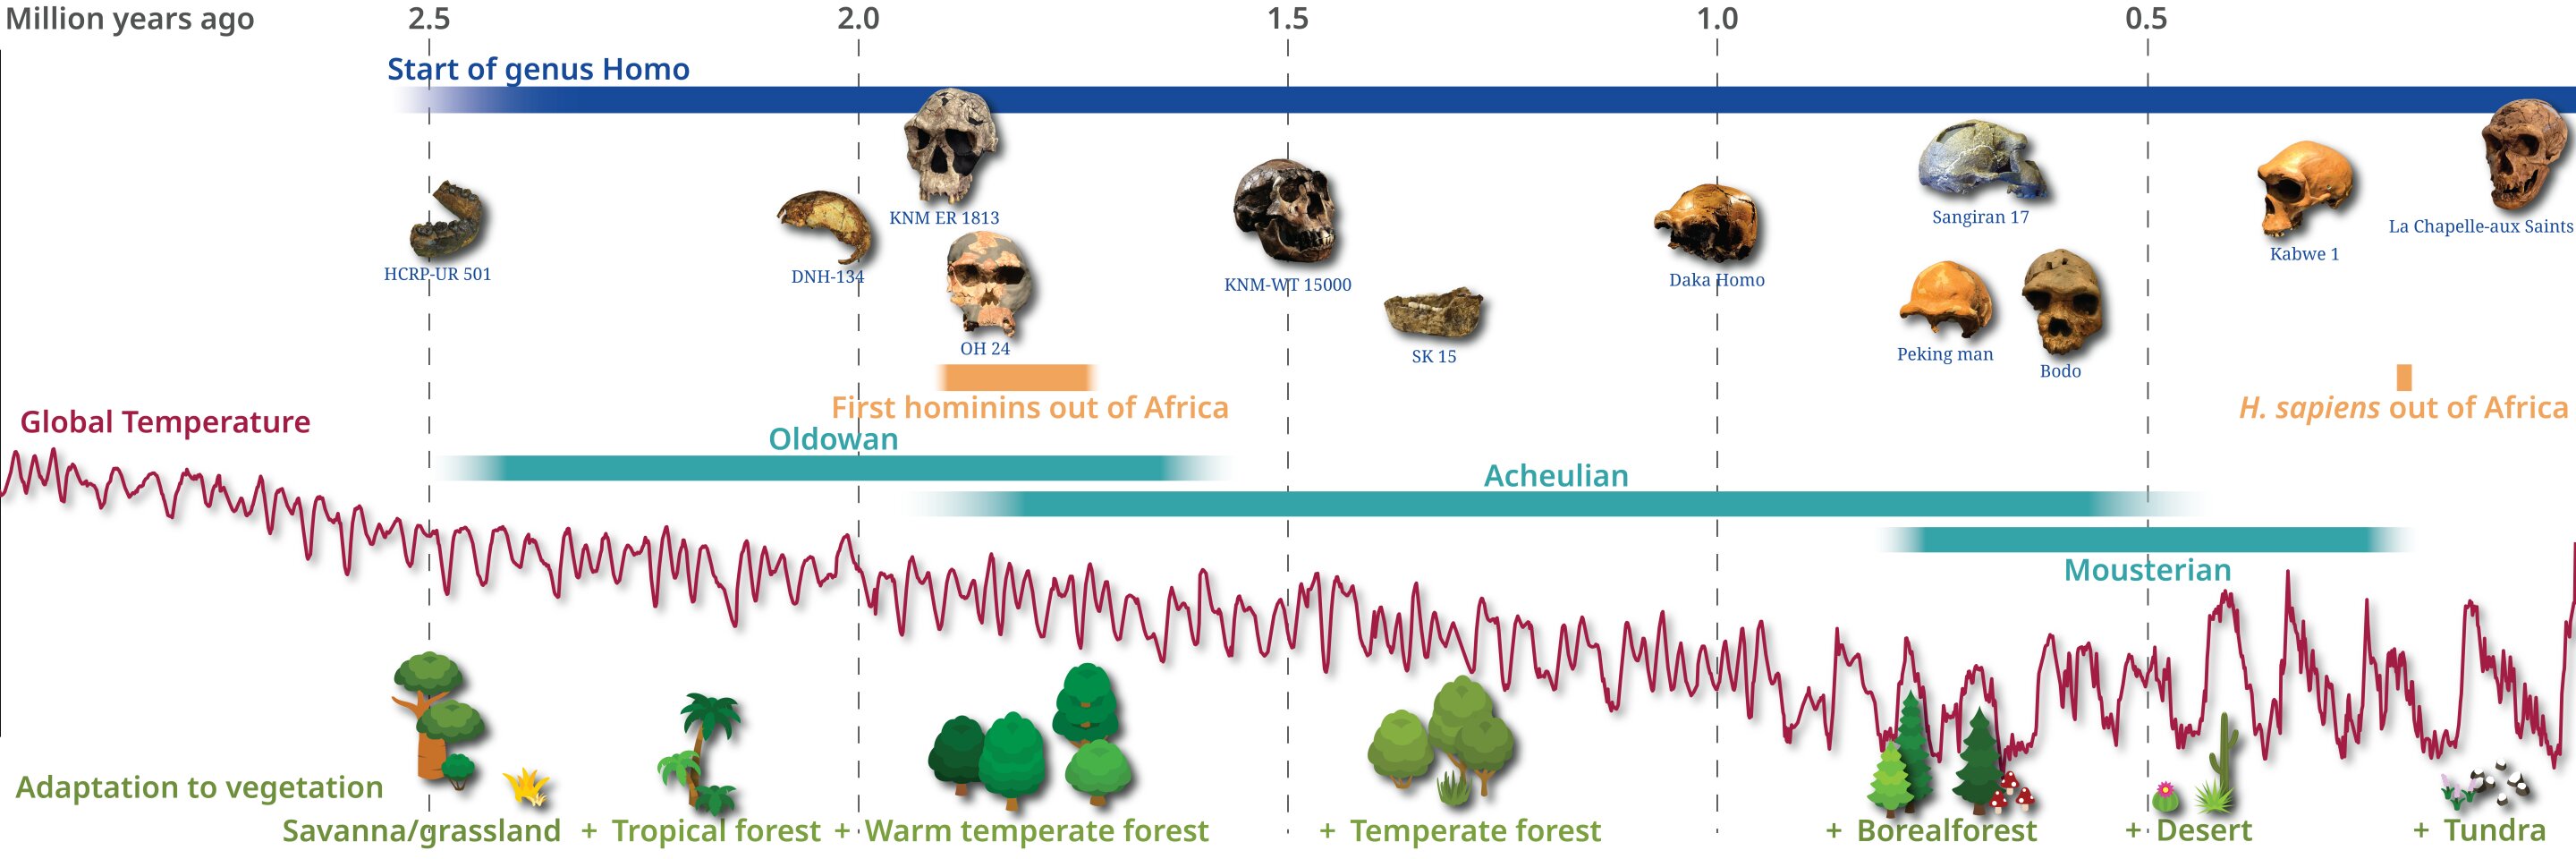 《科学》杂志：研究揭示过去300万年里人类对不同生物群落的适应性